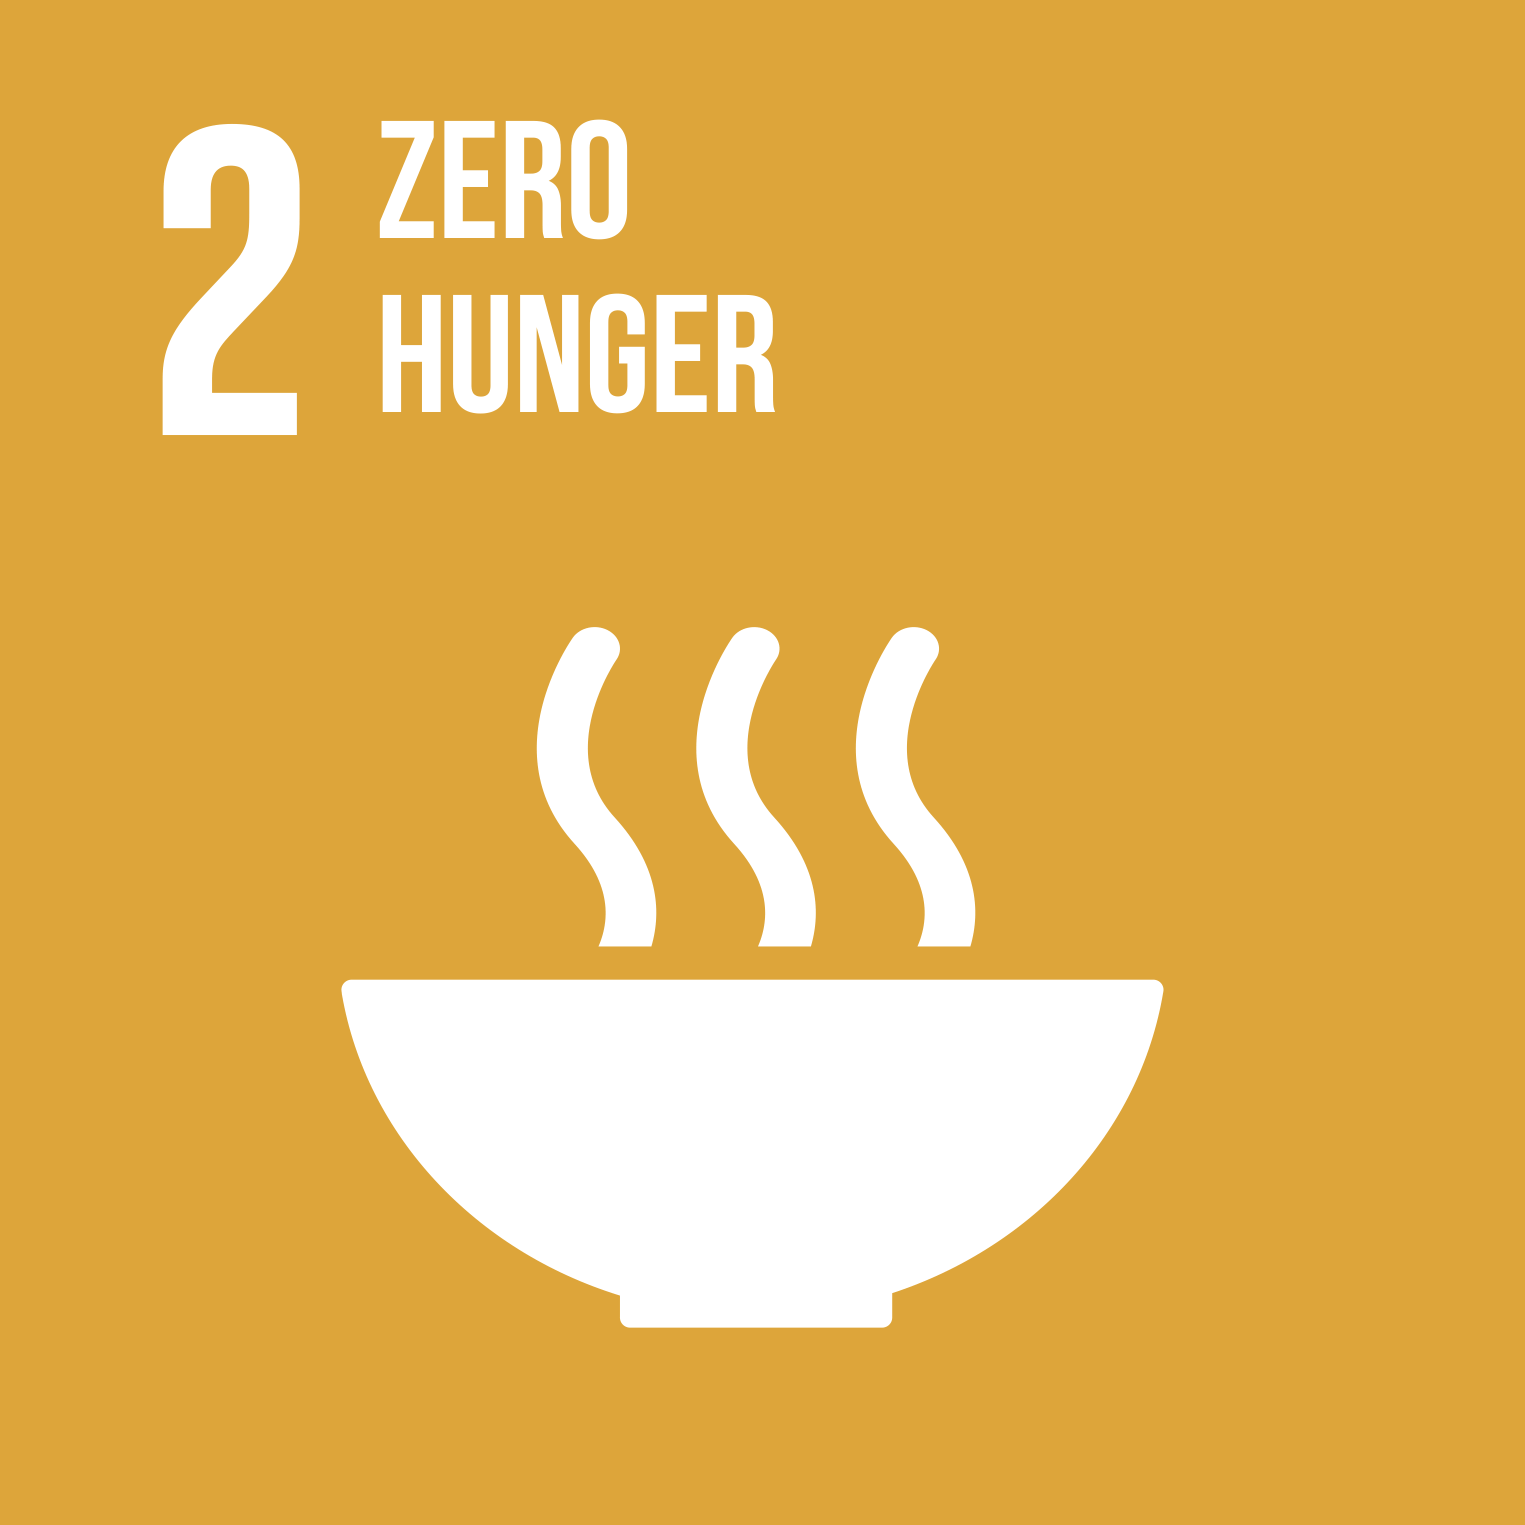 Resultado de imagem para sustainable development goals no hunger